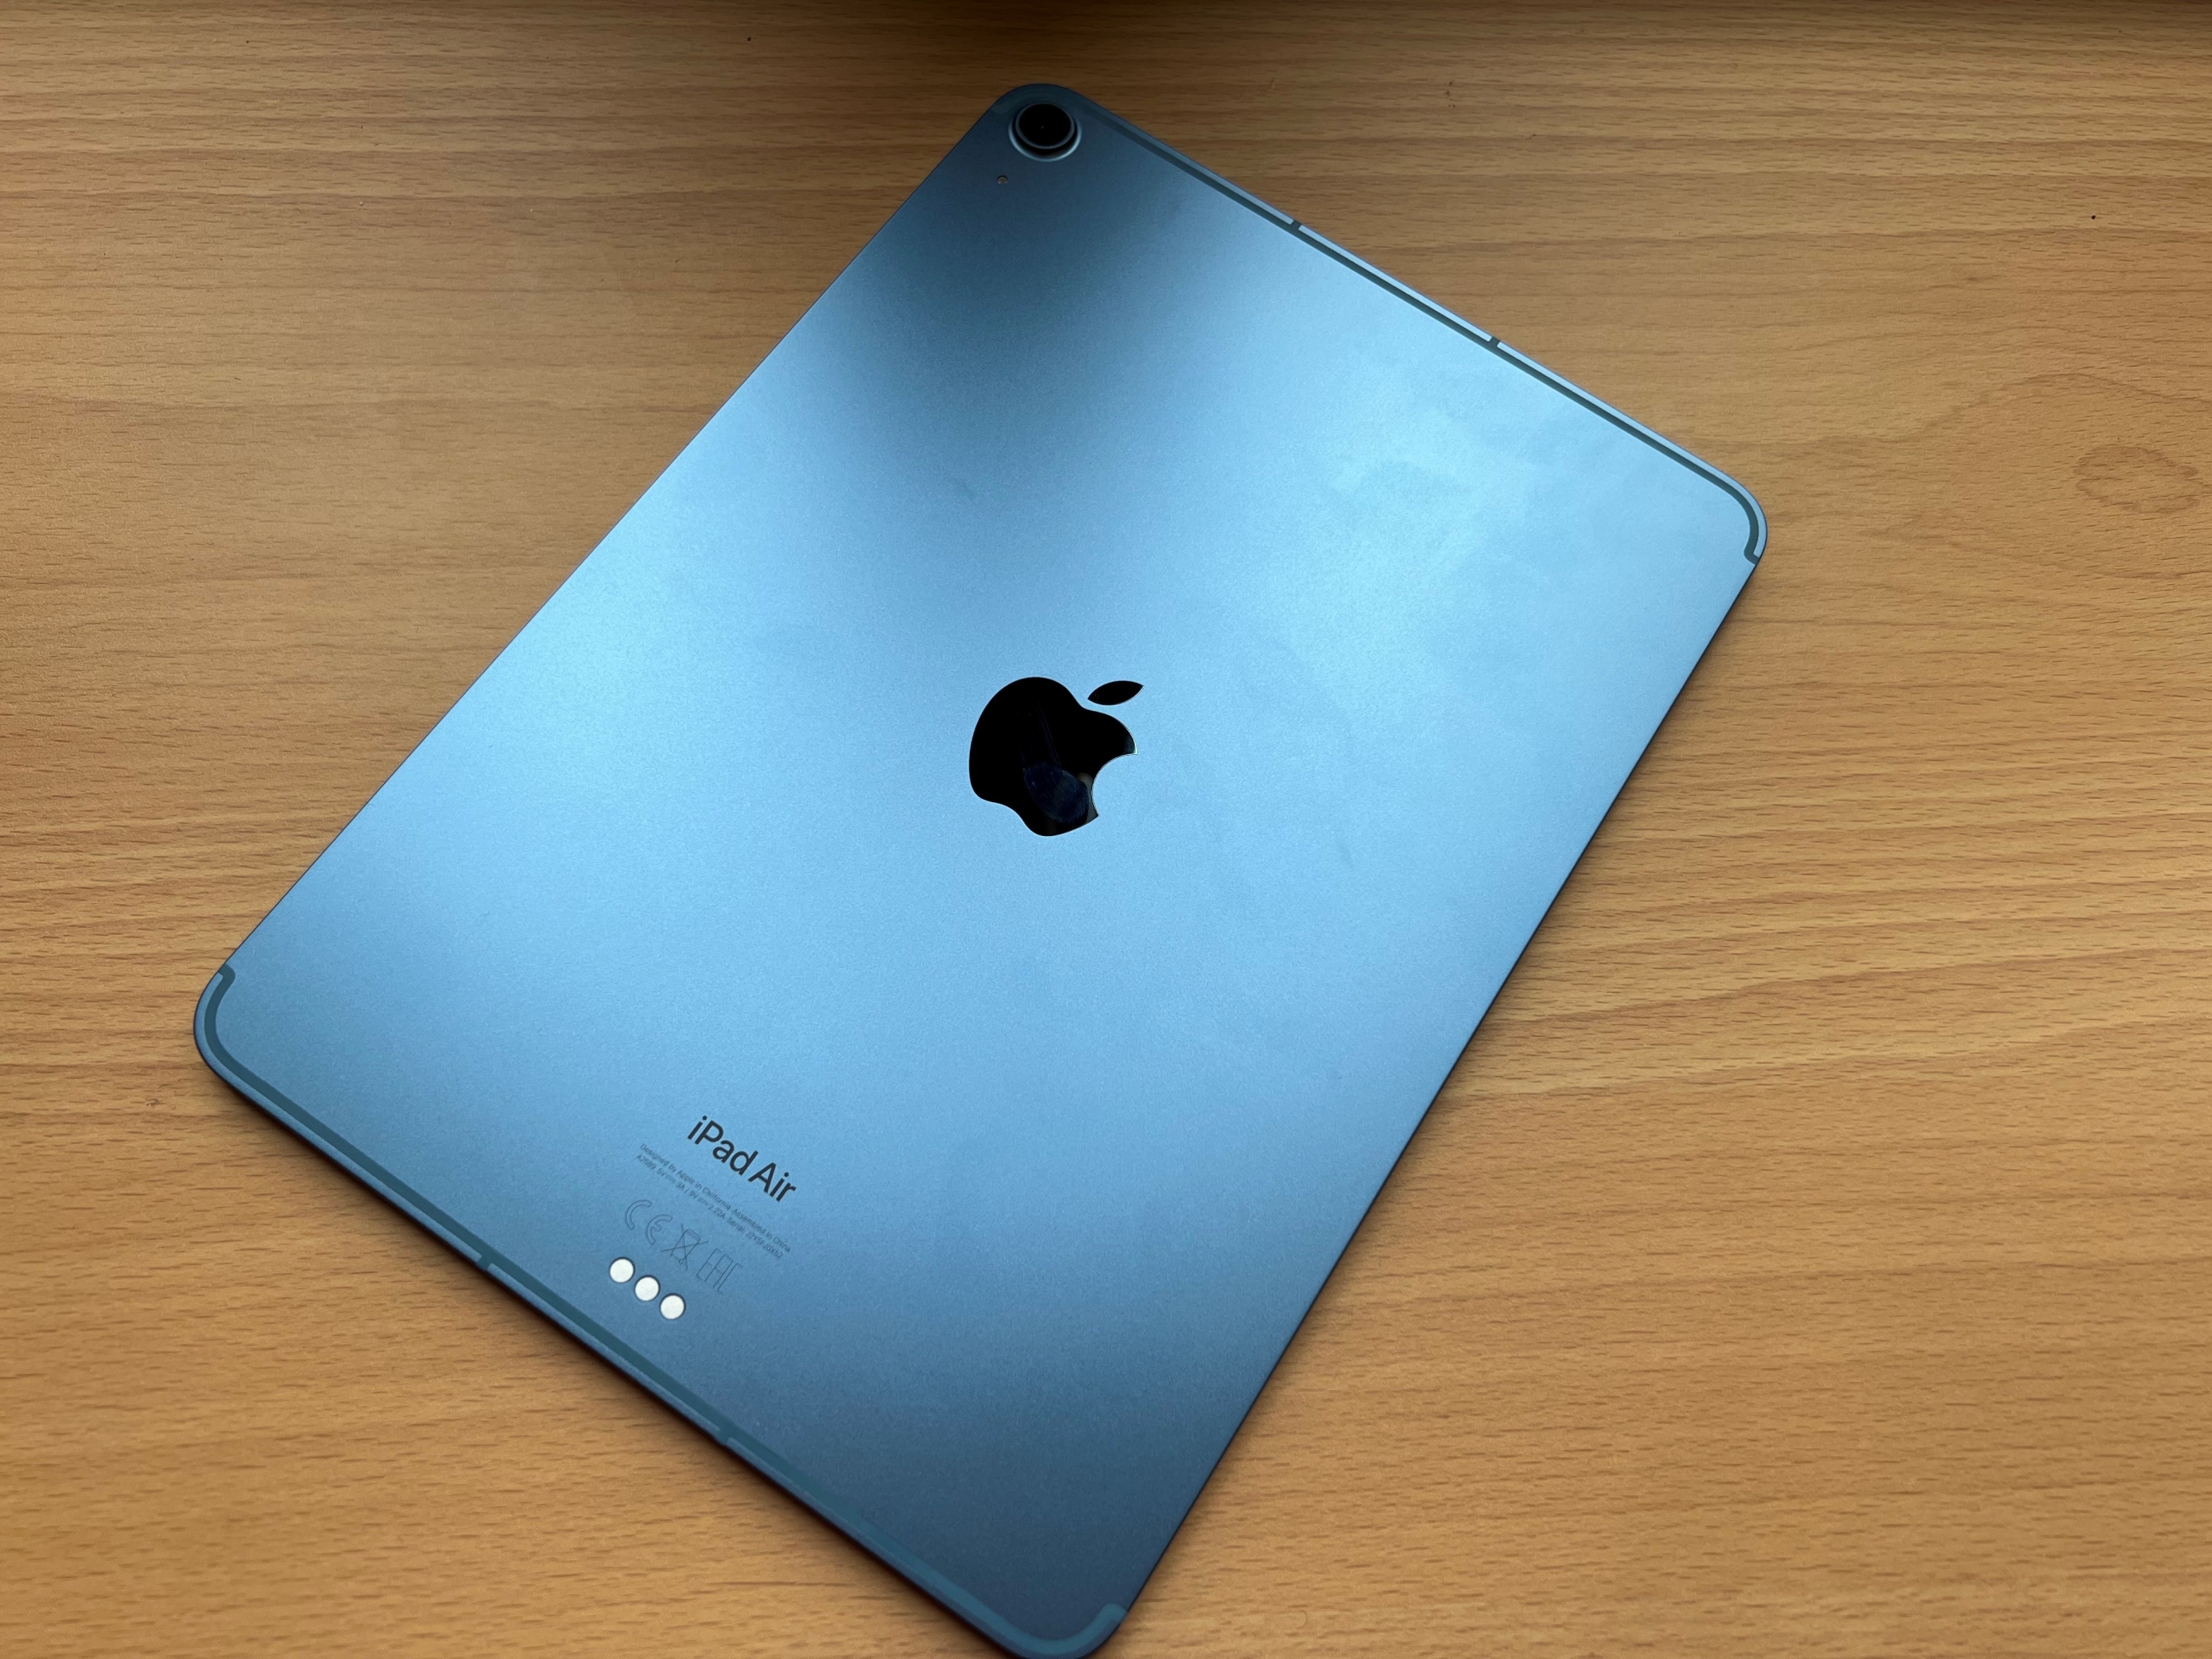 
                                    
                                iPad Air (2022), la recensione: sottile e potente, il tablet Apple più versatile